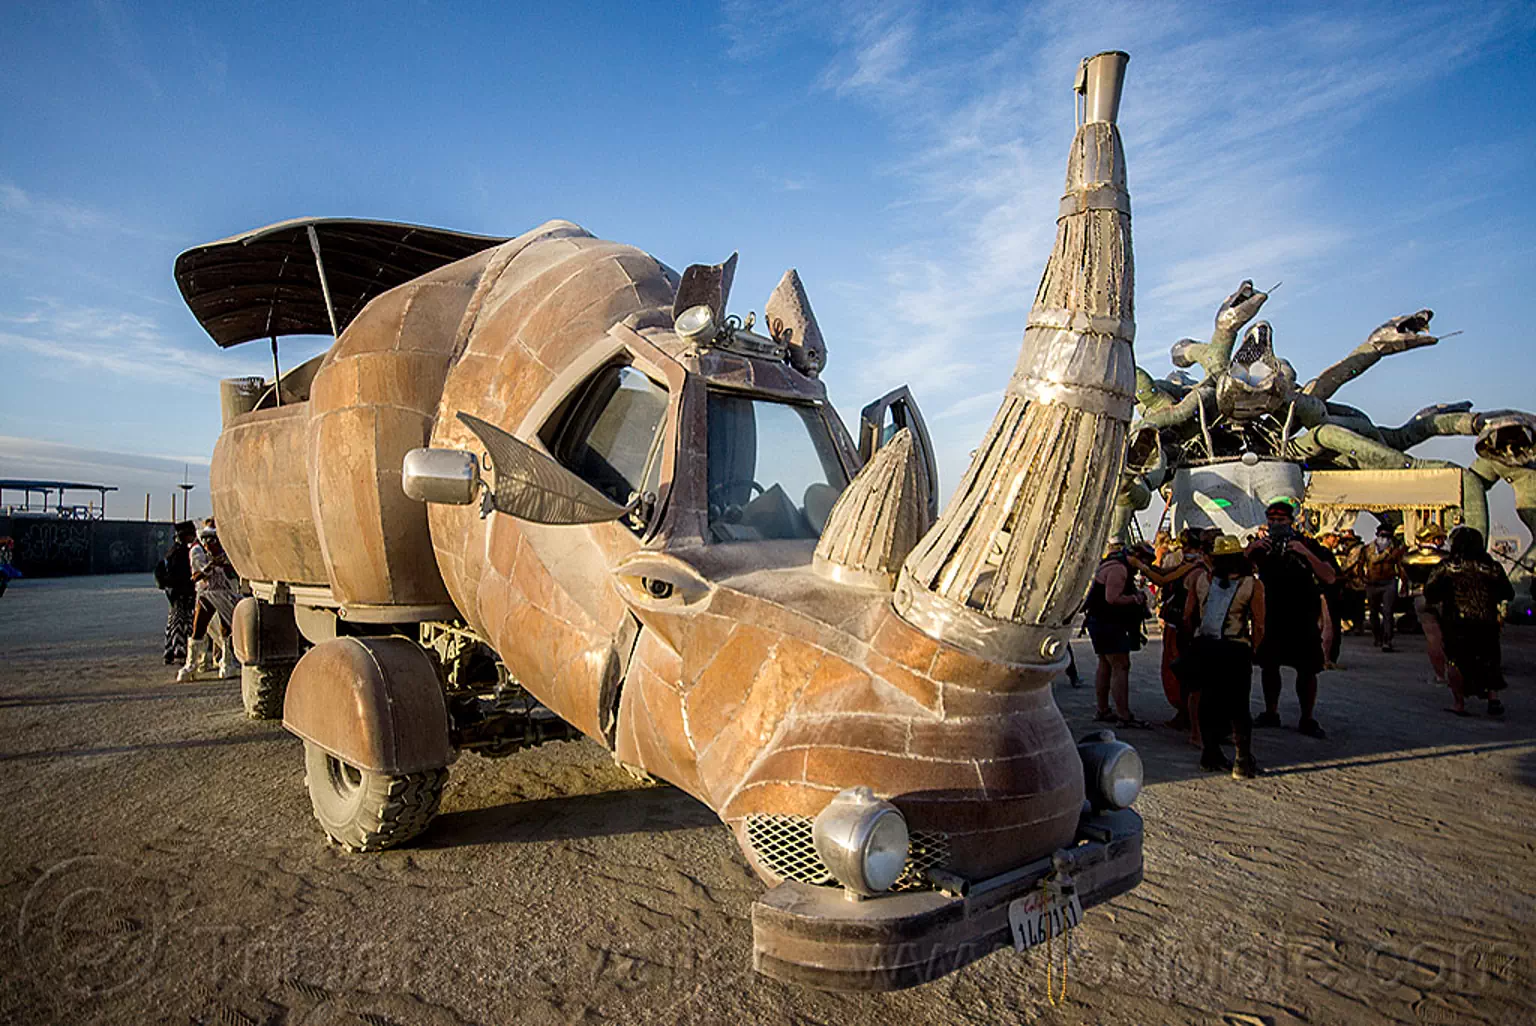 the mighty rhino redemption art car - burning man 2015, art car, burning man, kevin clark, mutant vehicles, rhino redemption, rhinoceros